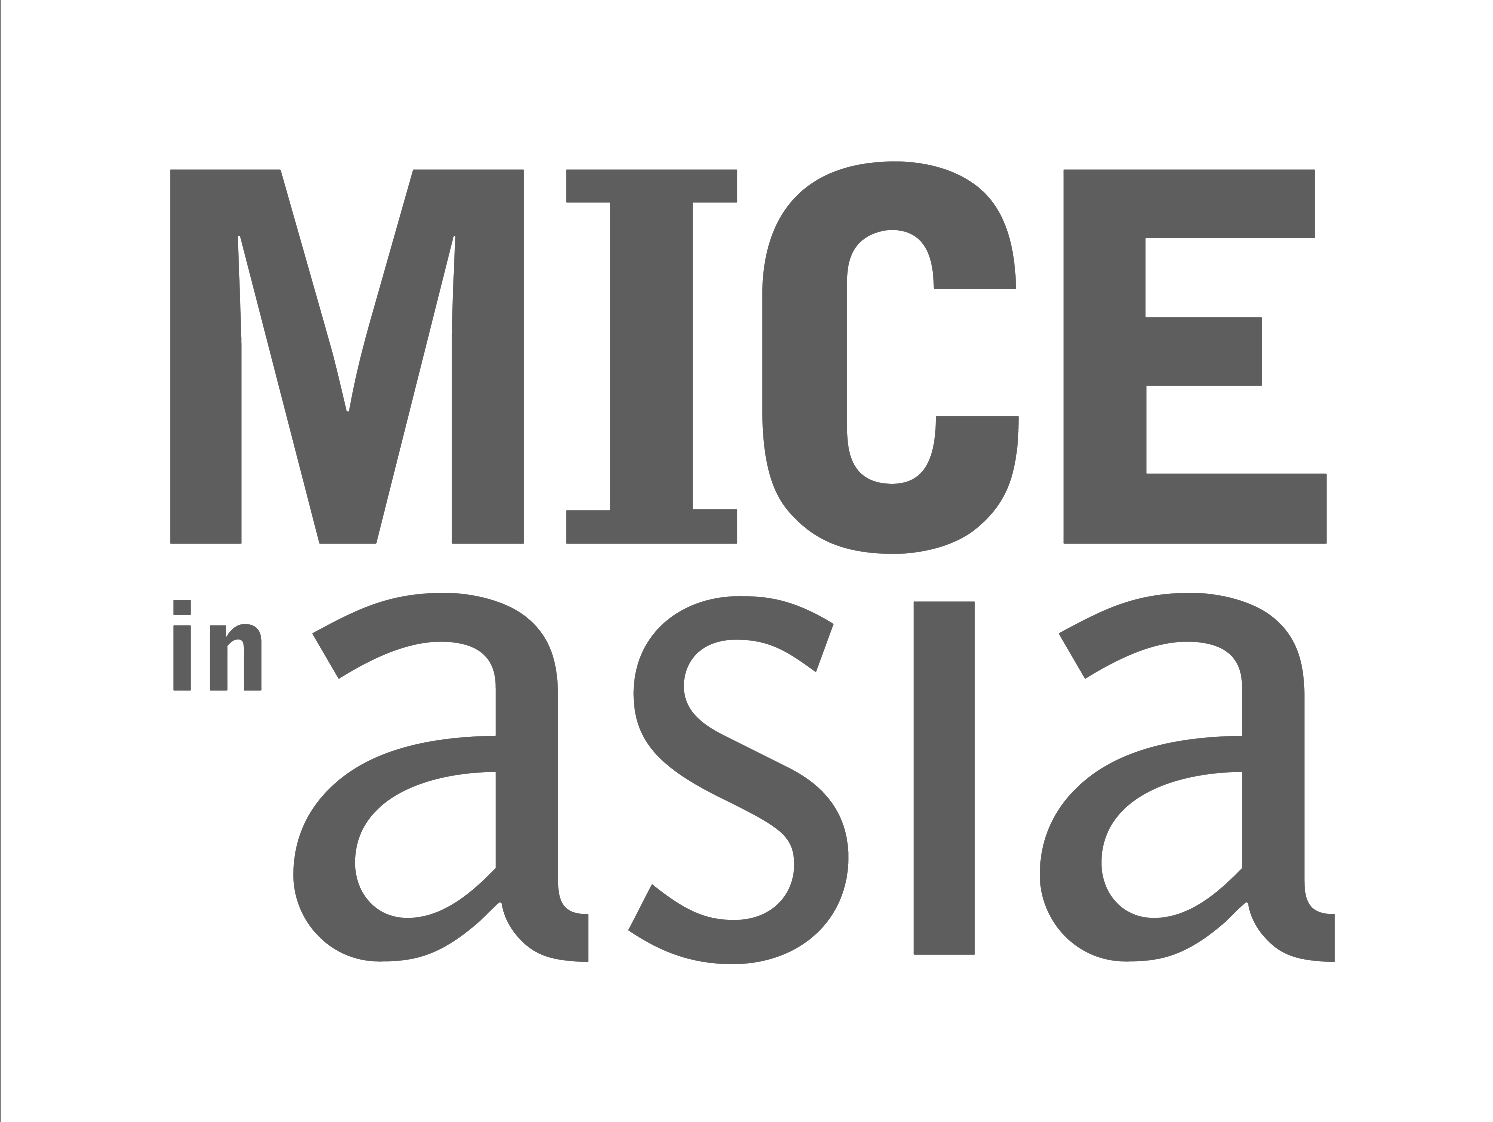 Mice in Asia 